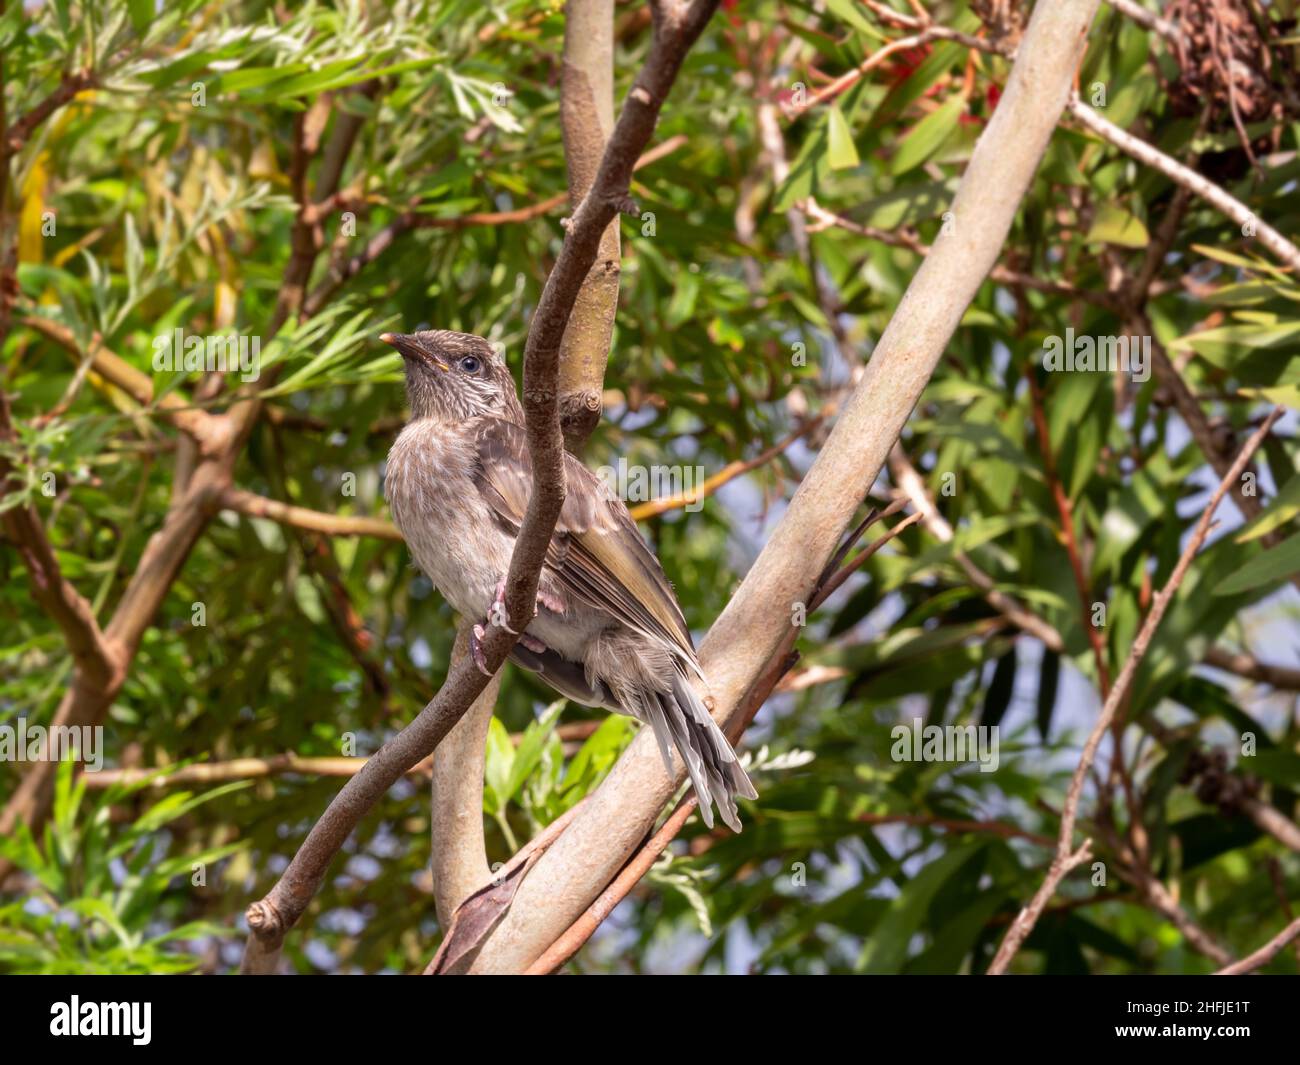 Un jeune petit wattlebird australien (Anthochera chrysoptera) perché sur une branche à Victoria, en Australie Banque D'Images